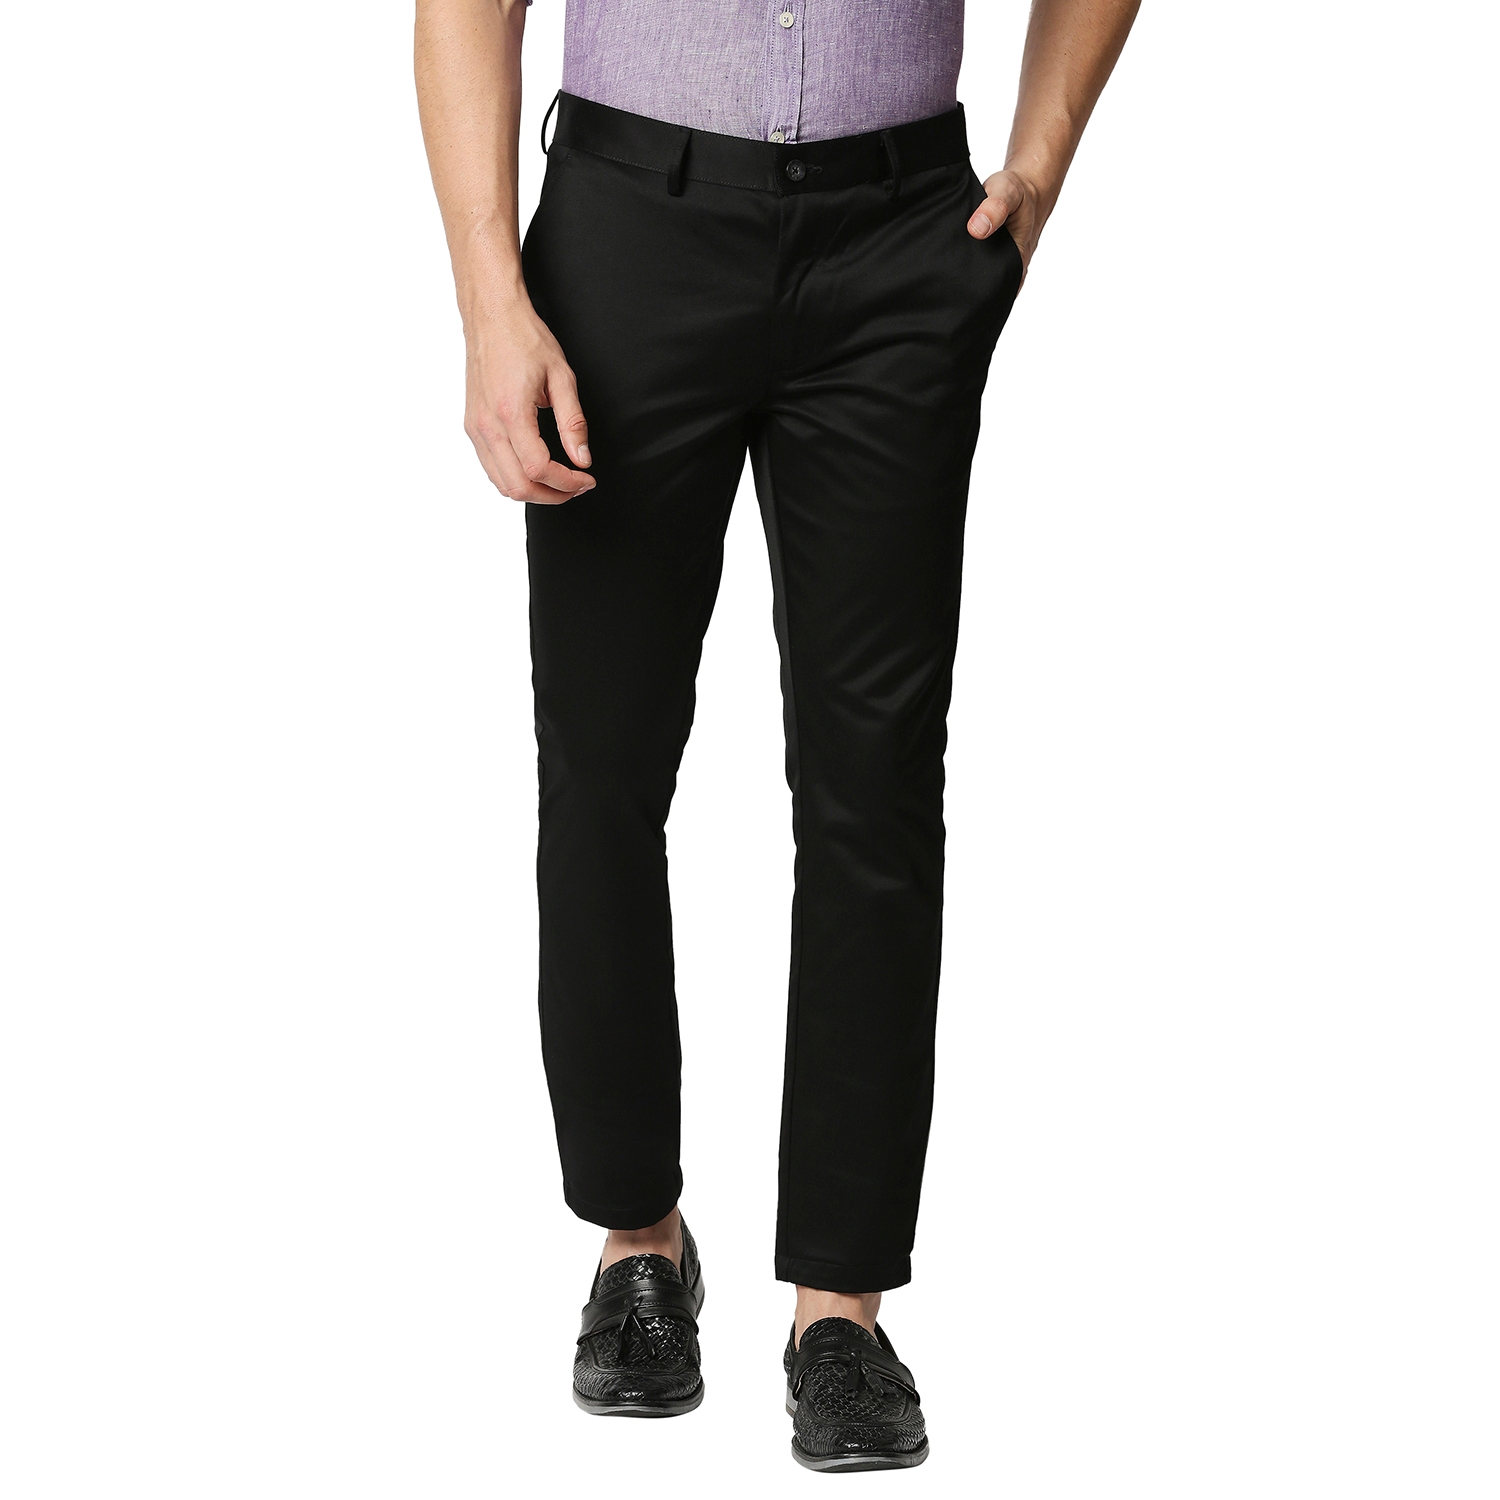 Basics | Basics Tapered Fit Black Satin Trousers